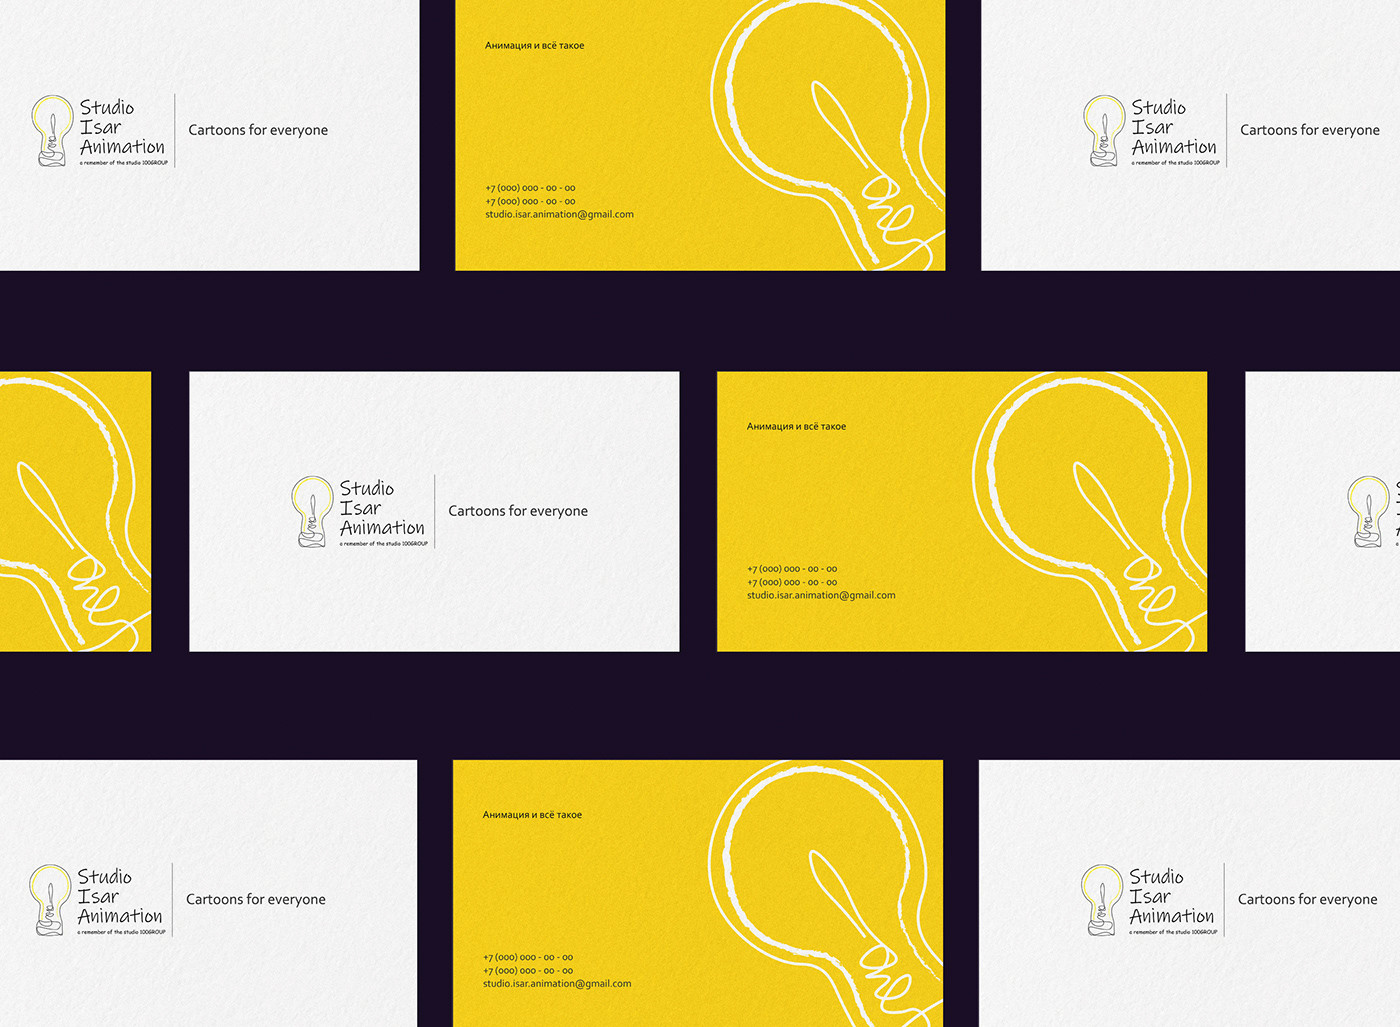 айдентика брендинг визитка графический дизайн дизайн логотип фирменный стиль